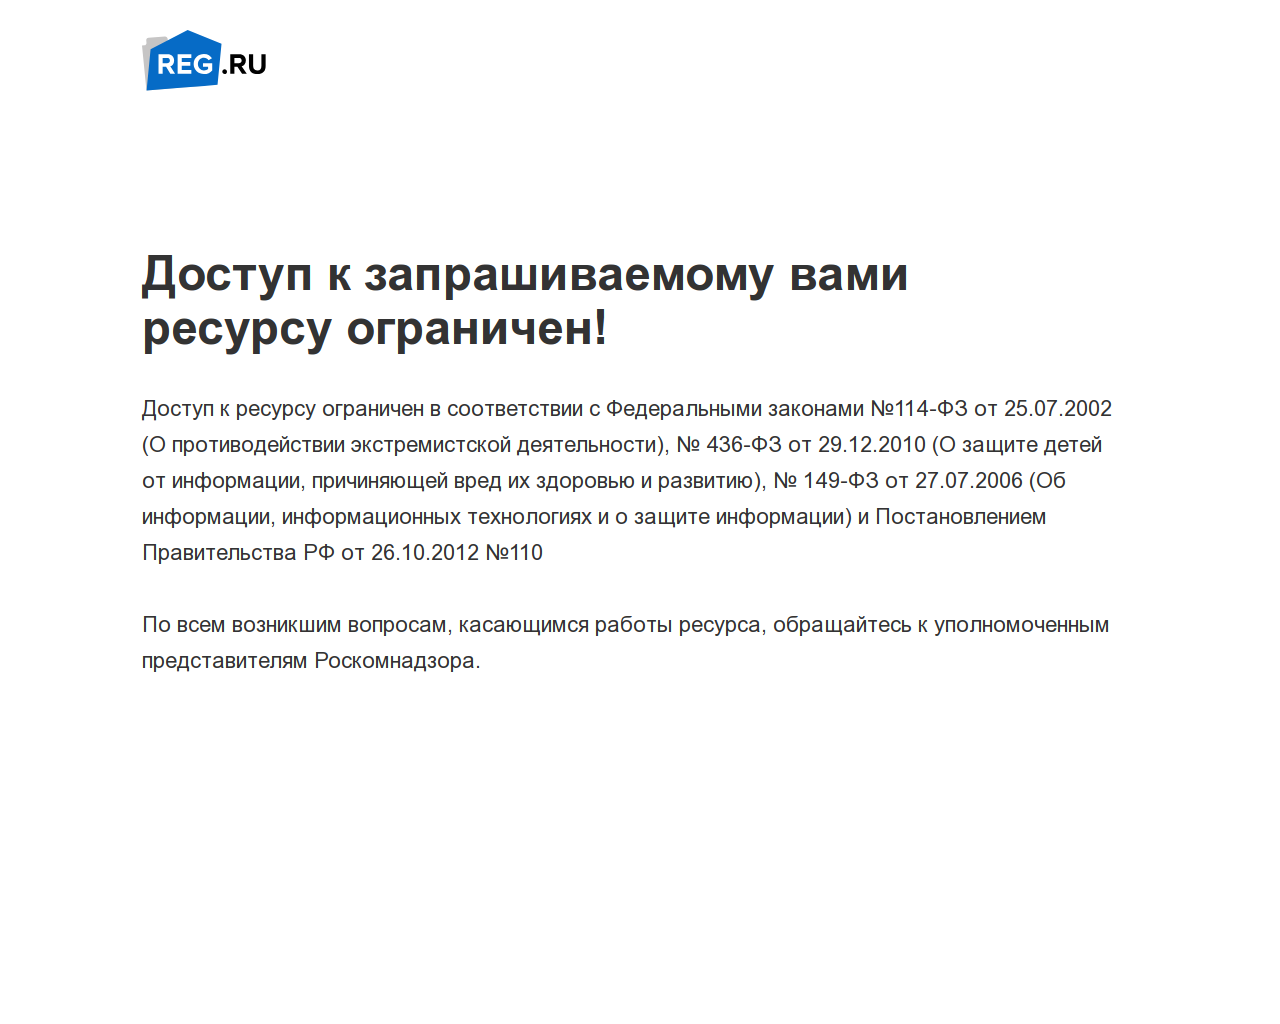 Изображение сайта viagrabuy24.ru в разрешении 1280x1024